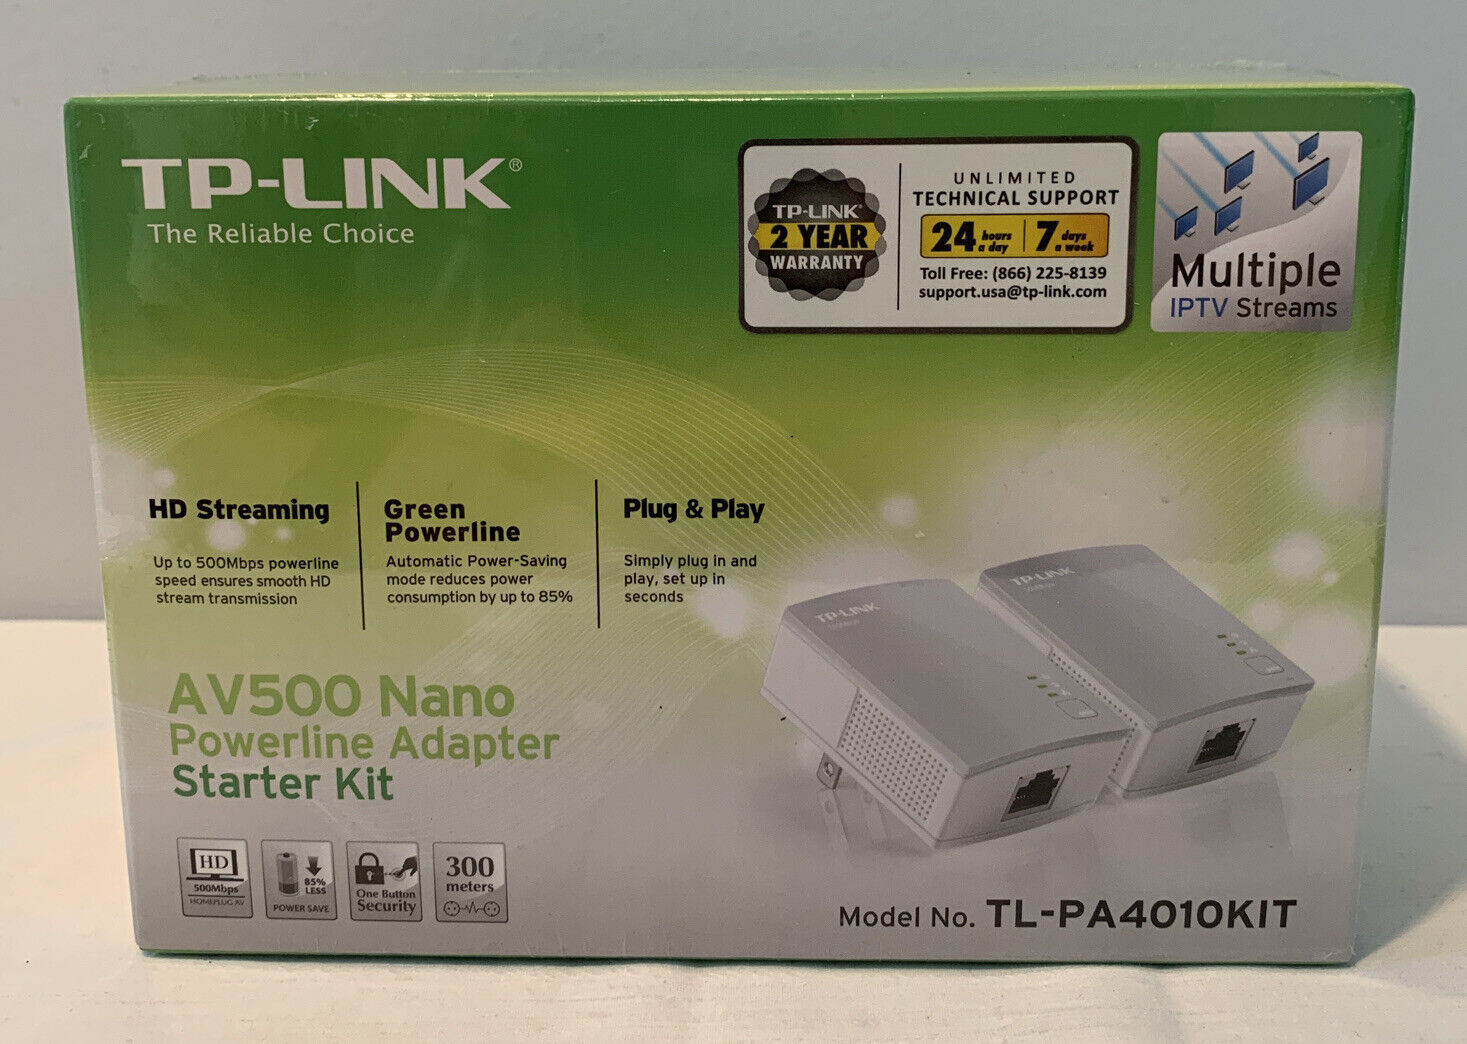 NIP TP-Link AV500 Nano Powerline Adapter Starter Kit Model No. TL-PA4010KIT